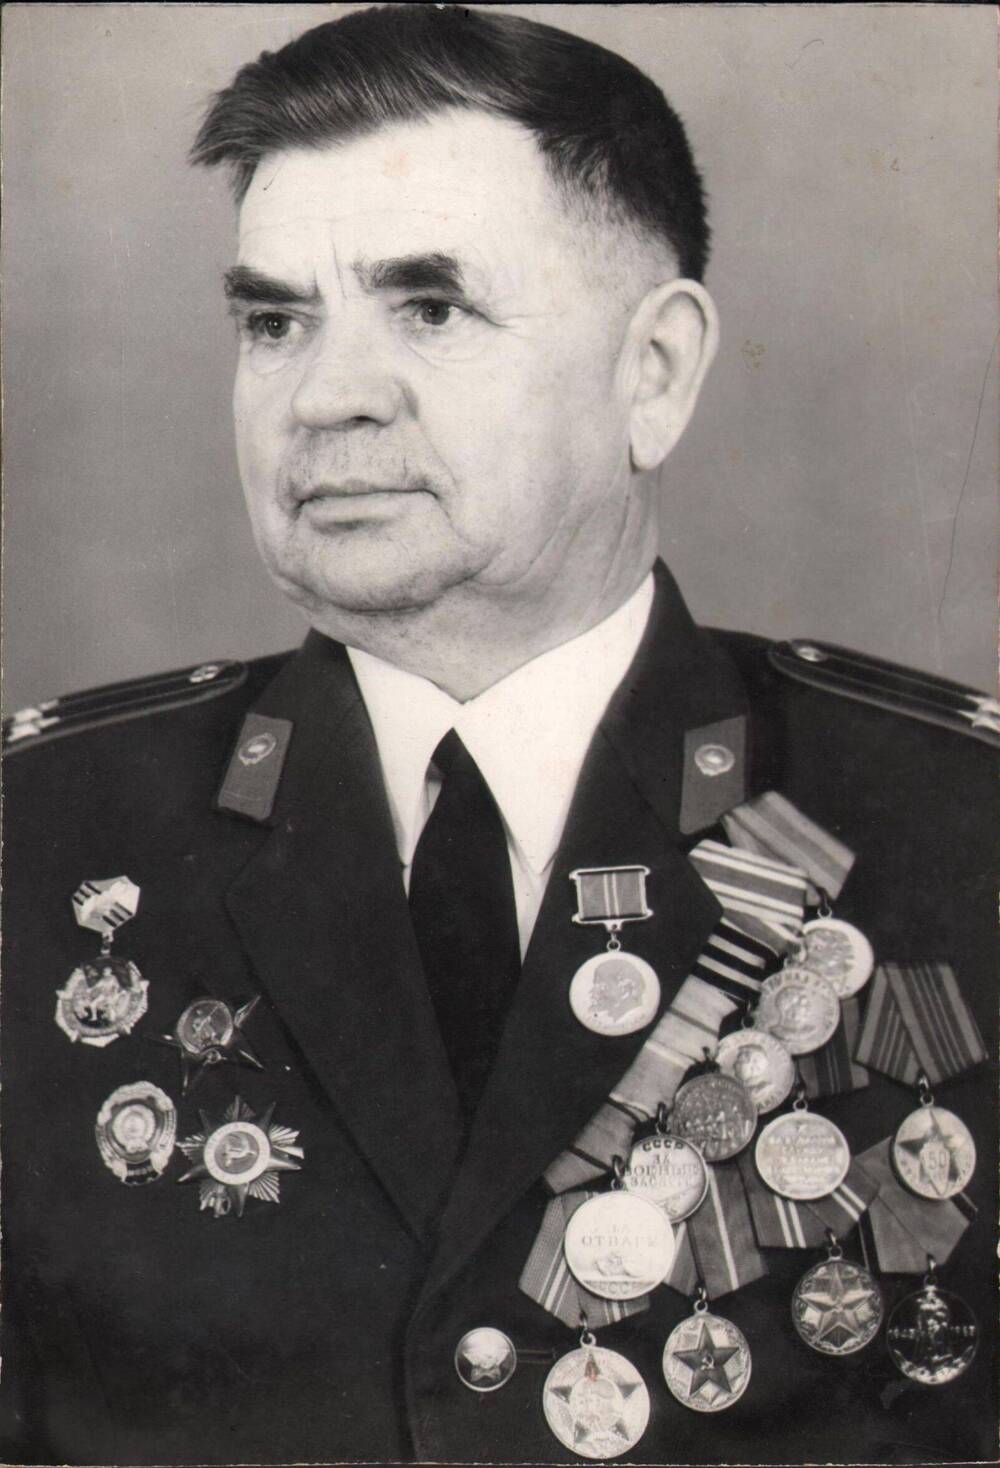 Фотография .Курочкин Николай Гаврилович (1919-2004 )ветеран войны,подполковник запаса,  начальник Еланской милиции в 60-70гг.ХХ века